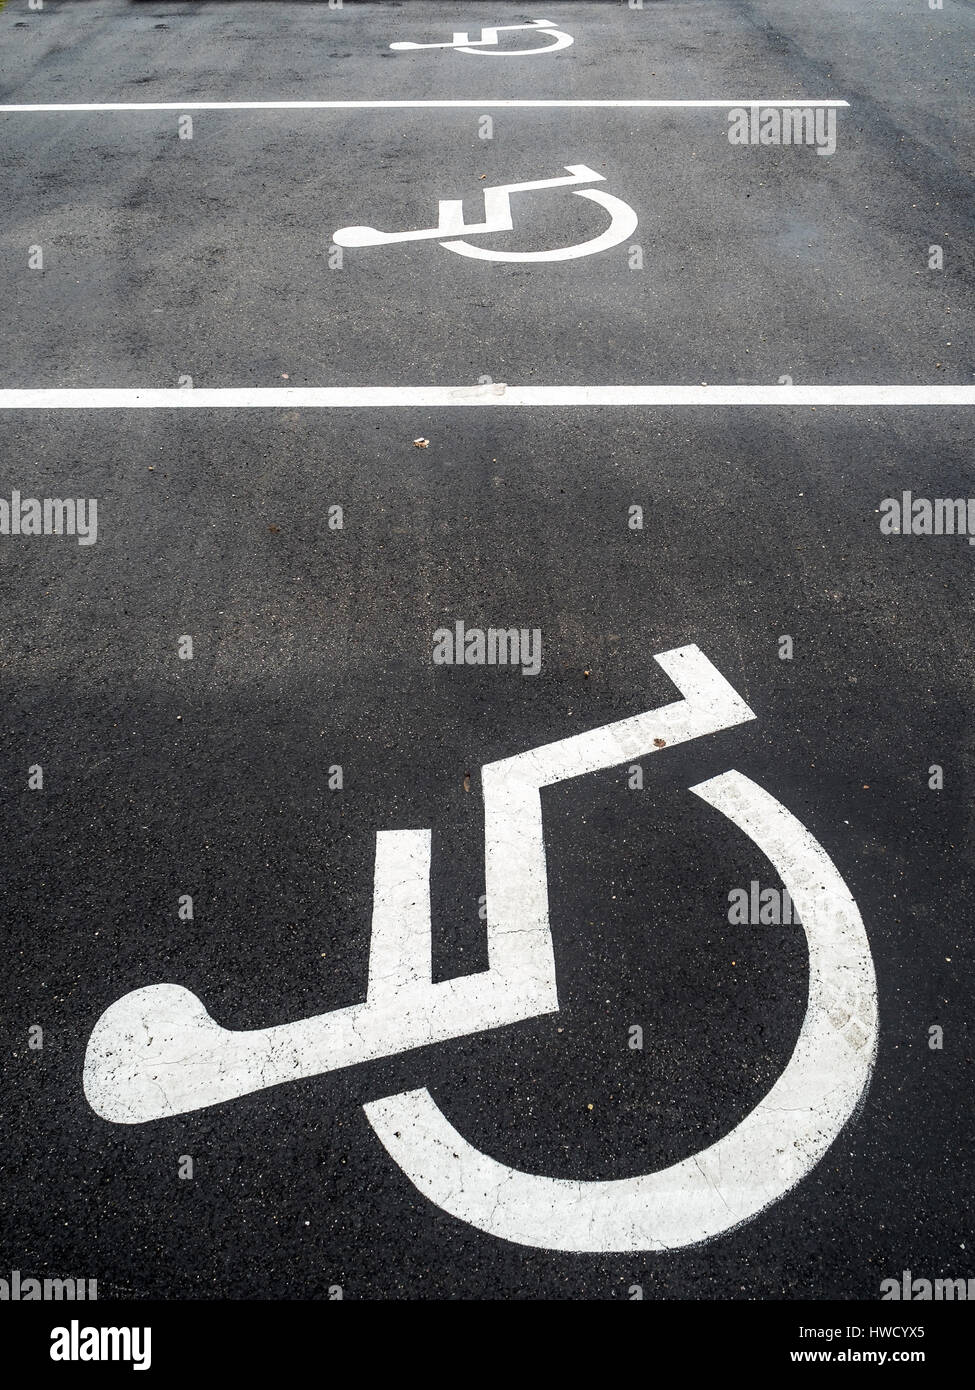 Una sedia a rotelle si trova proprio su una baia di parcheggio per disabili., Ein Rollstuhl ist auf einem Parkplatz für Behinderte angebracht. Foto Stock